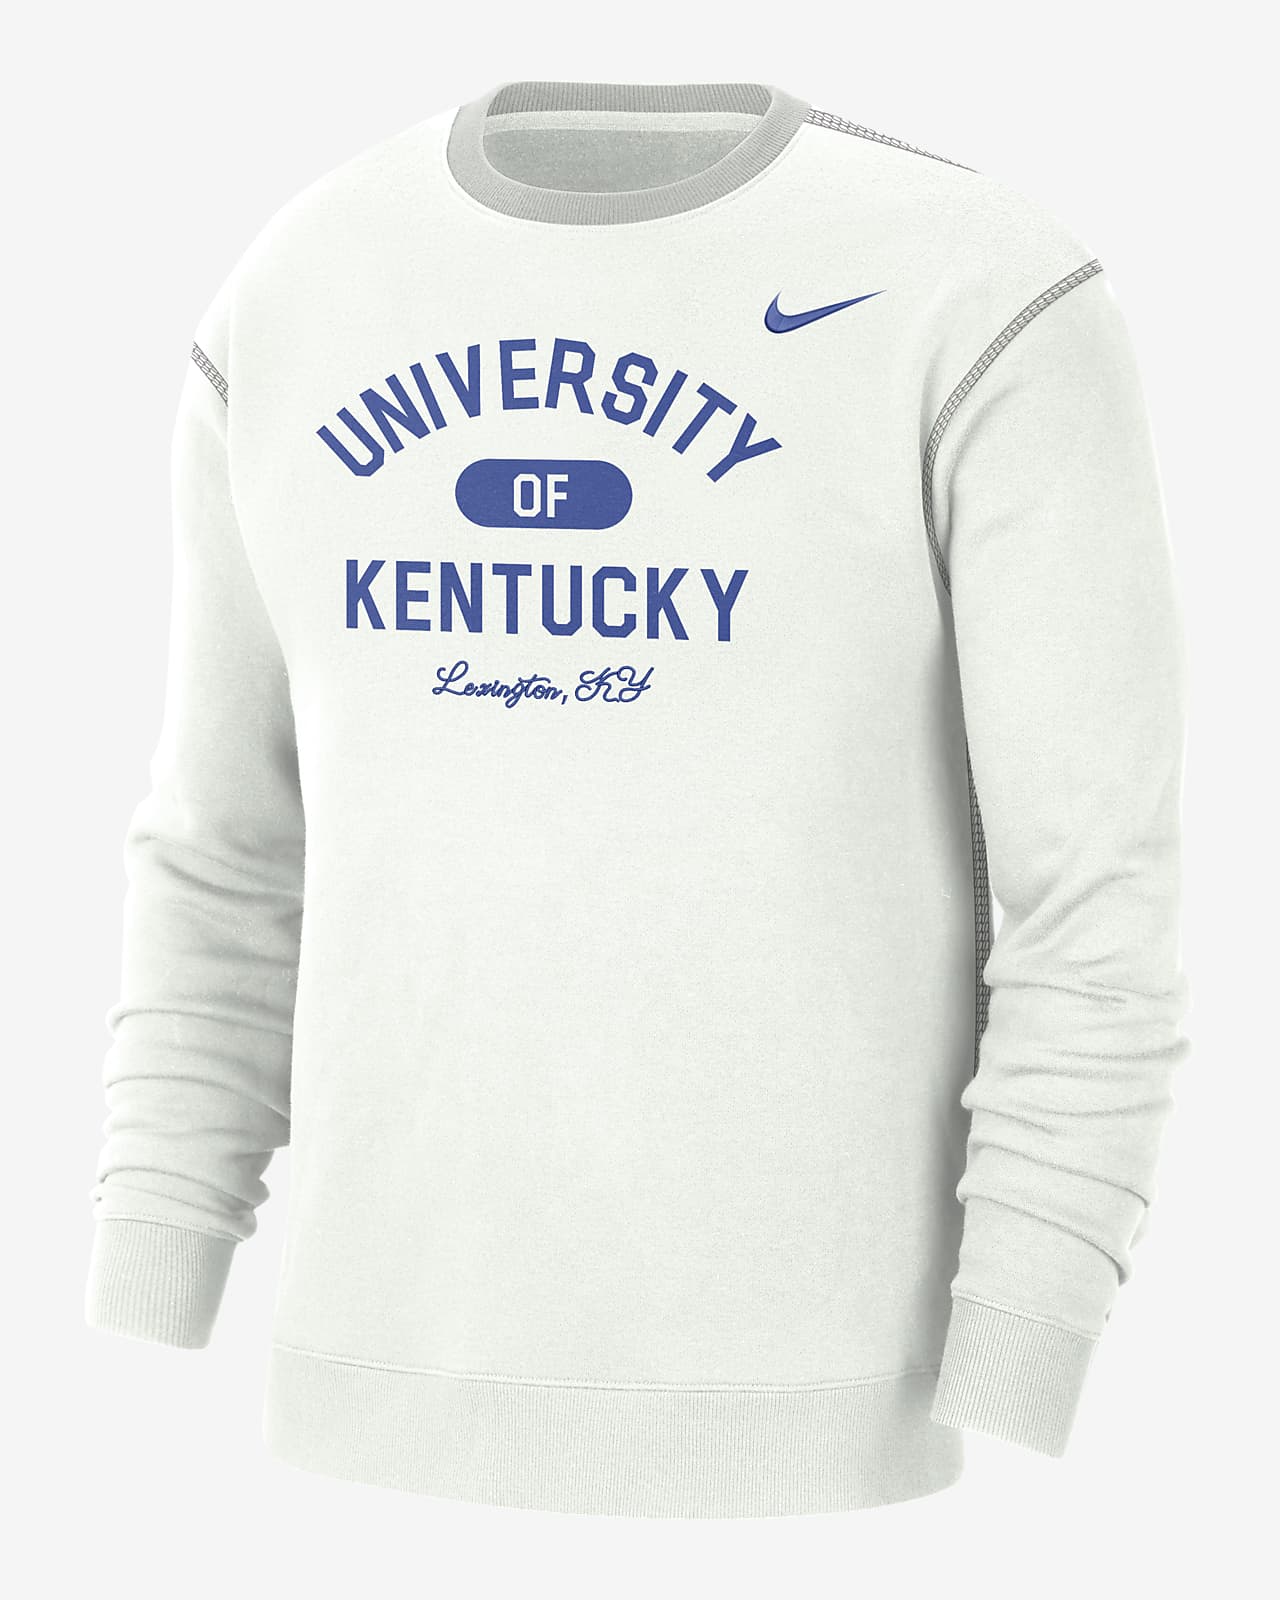 Playera de cuello redondo universitaria Nike para hombre Kentucky